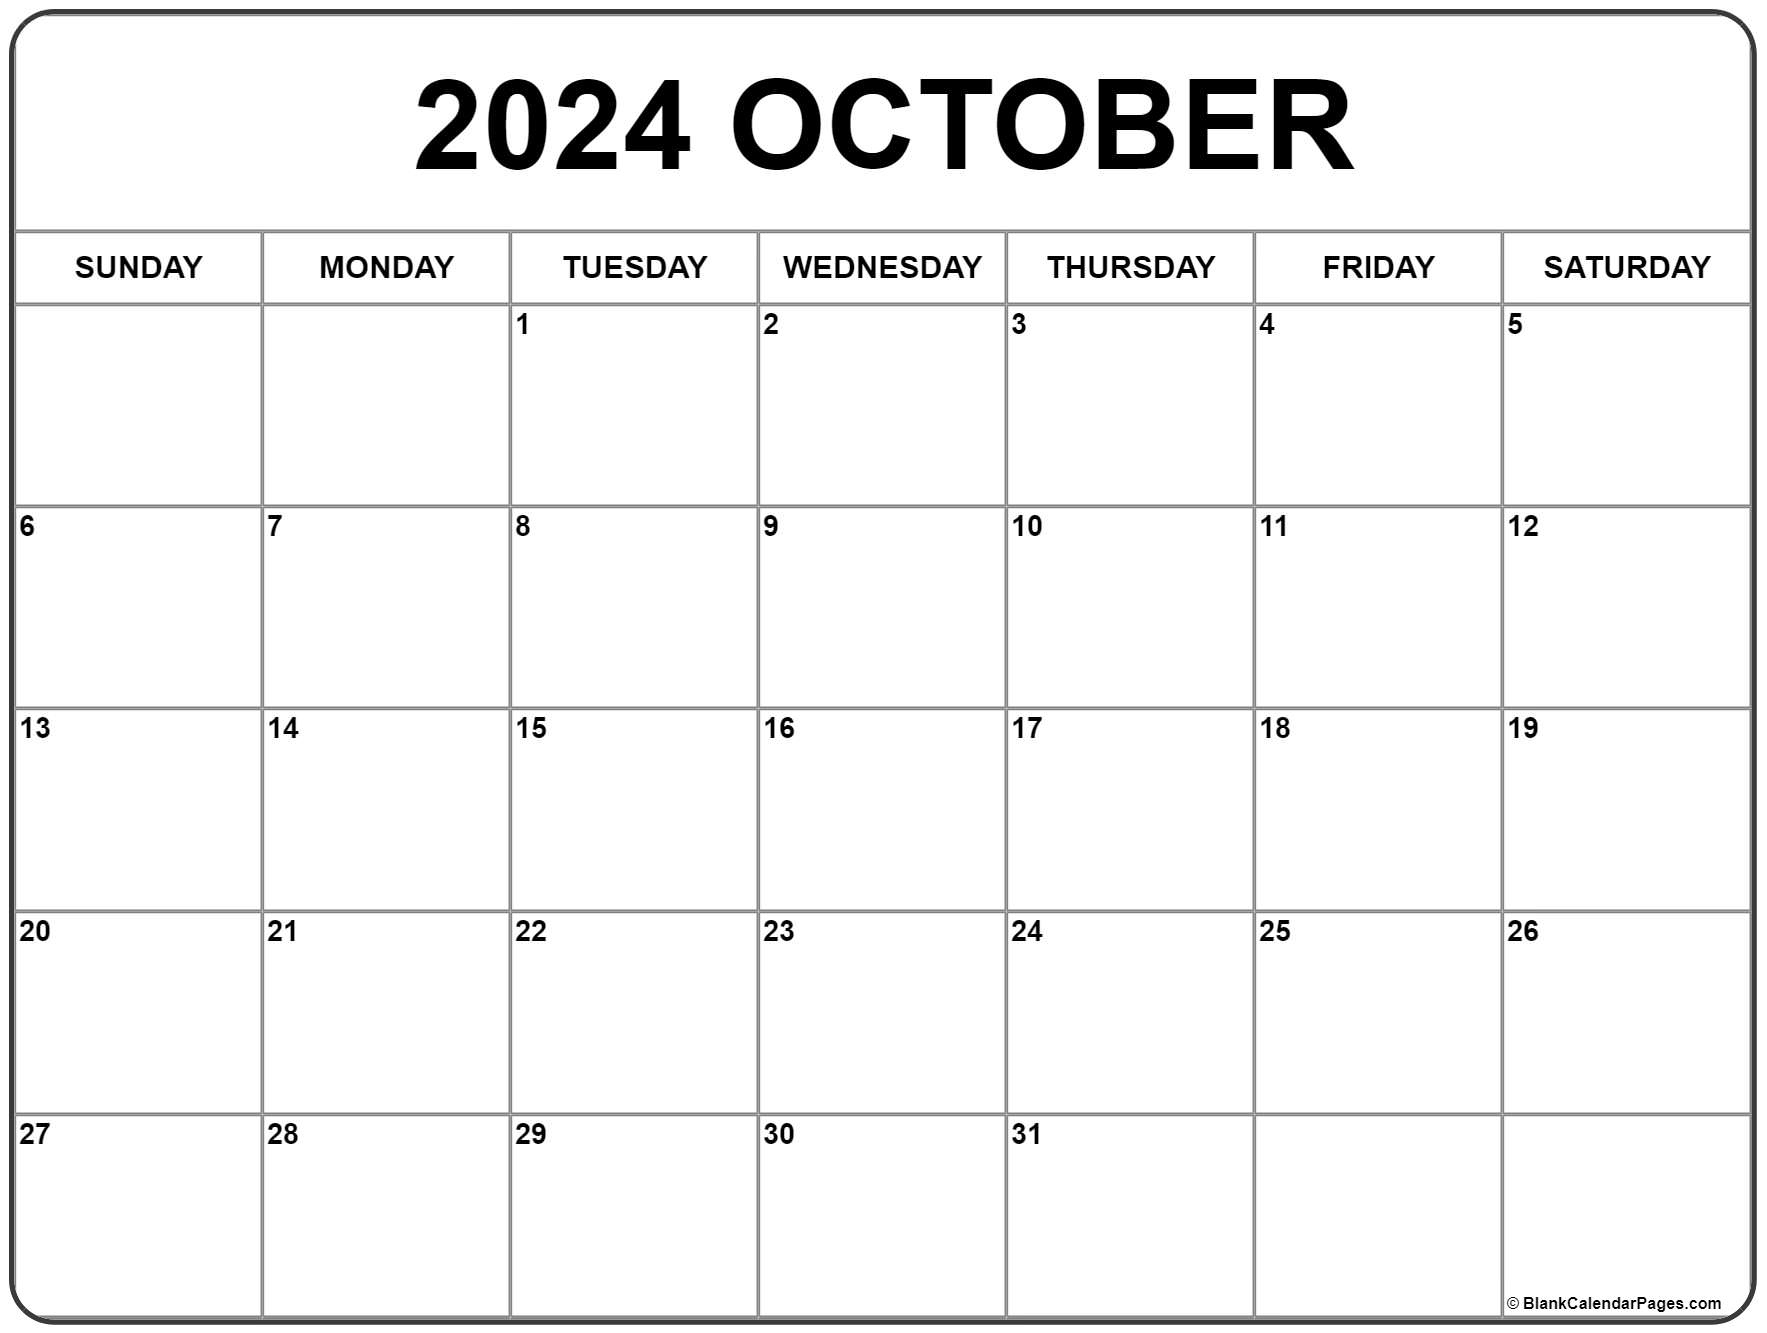 October 2024 Calendar | Free Printable Calendar within Free Printable Appointment Calendar October 2024